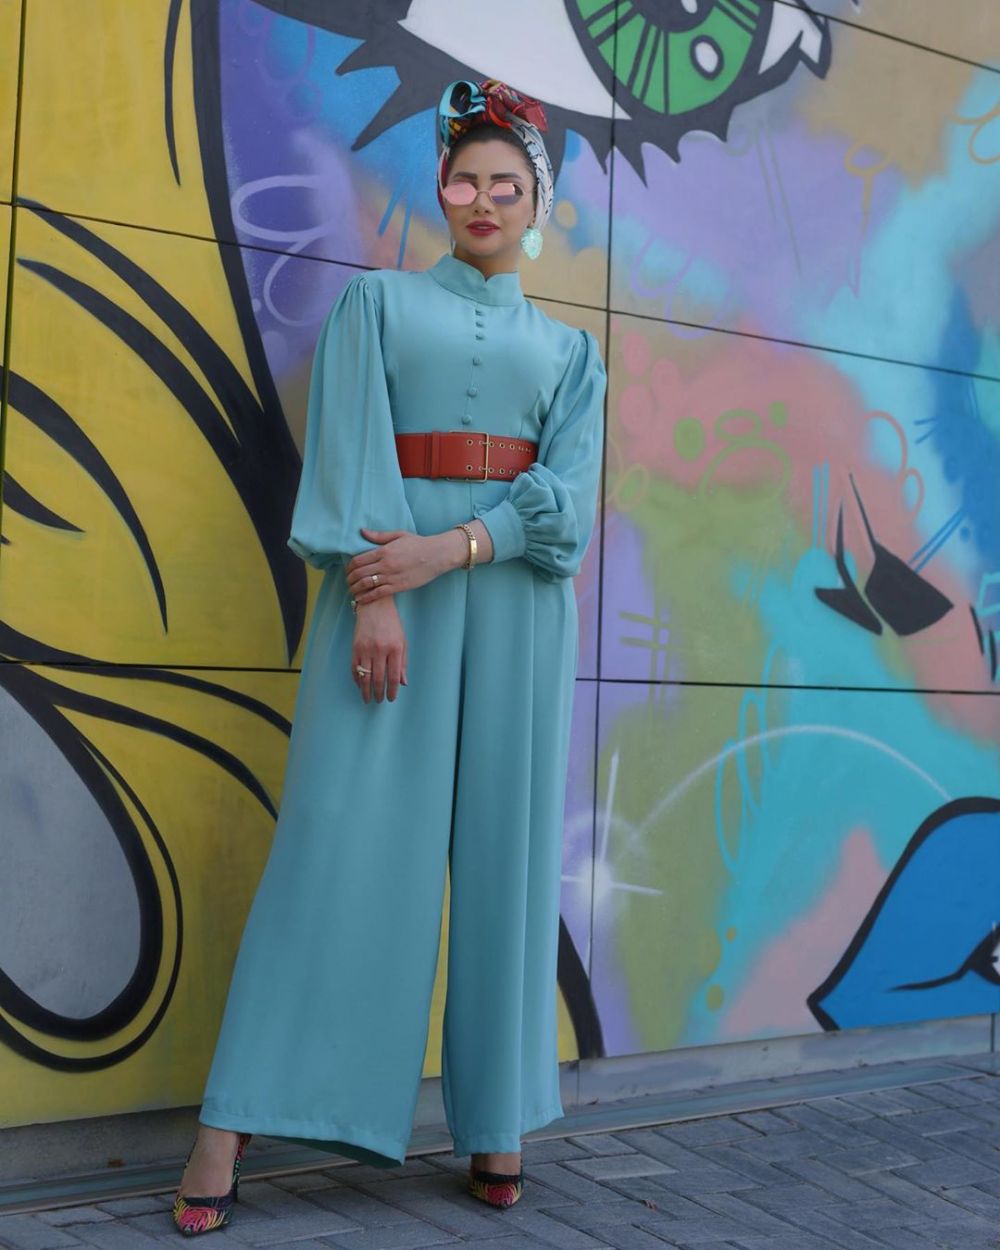 12 Inspirasi outfit jumpsuit untuk hijaber, stylish dan kekinian